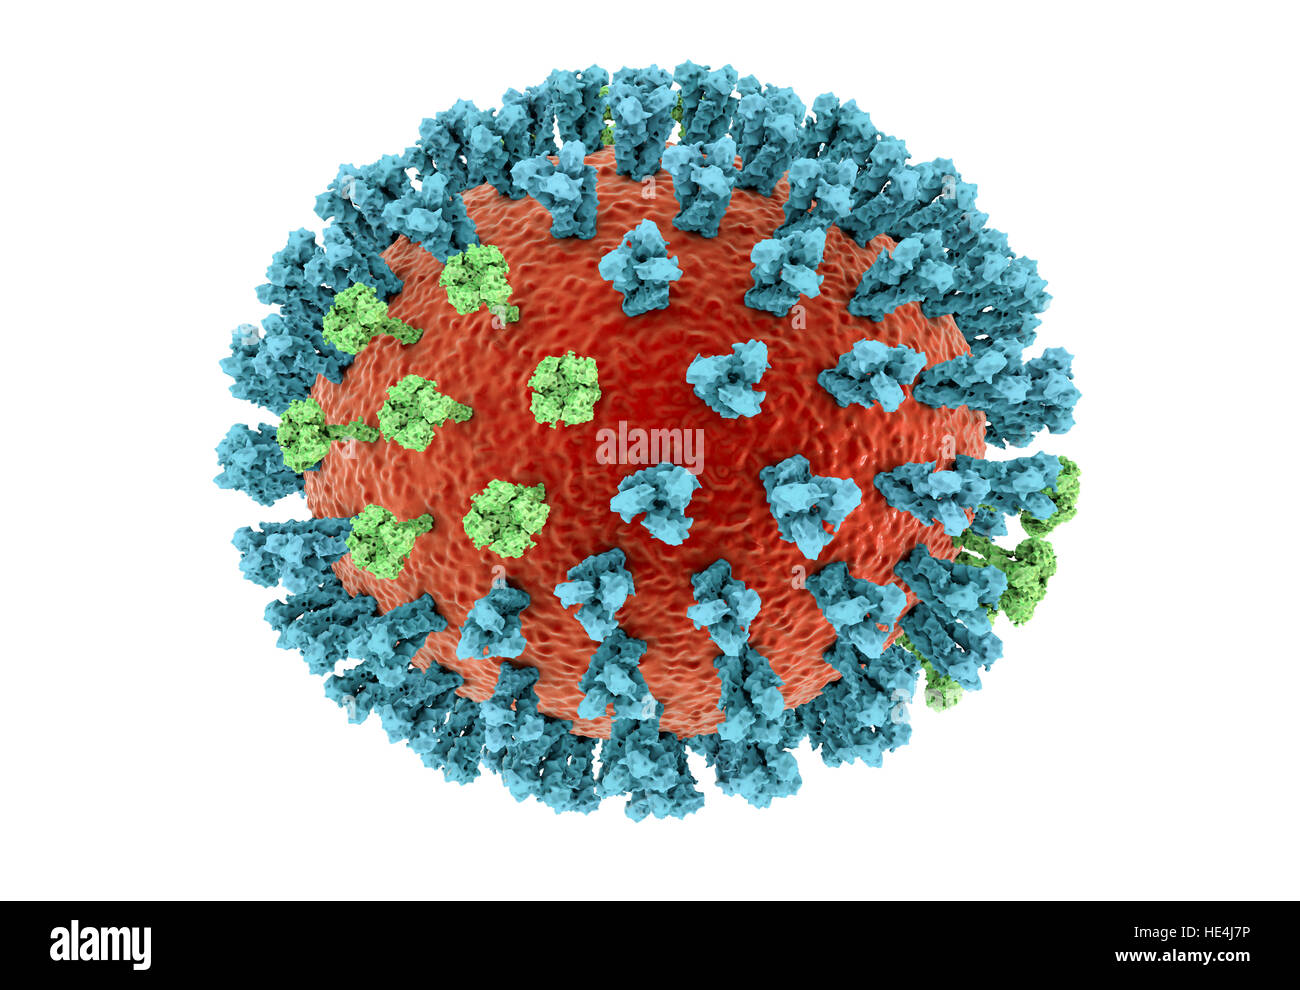 Vogelgrippe-Virus. 3D Illustration einer Vogelgrippe H5N8 Viruspartikel. Innerhalb der viralen Lipid Umschlag (Orange) sind zwei Arten von Protein spike, Hämagglutinin (H, blau) und Neuraminidase (N, grün), die die Stamm des Virus zu bestimmen. Dieser Stamm des Virus verursachte Krankheit bei Wildvögeln und Geflügel in Europa und Asien seit Juni 2016. Ungewöhnlich ist, verursacht das Virus Mortalität bei Wildvögeln, die mehr oft leisen Fördermaschinen sind. Ab Dezember 2016 keine Fälle der Krankheit beim Menschen gemeldet wurden, und Risiko der Übertragung auf den Menschen wird gedacht, um niedrig zu sein. Stockfoto